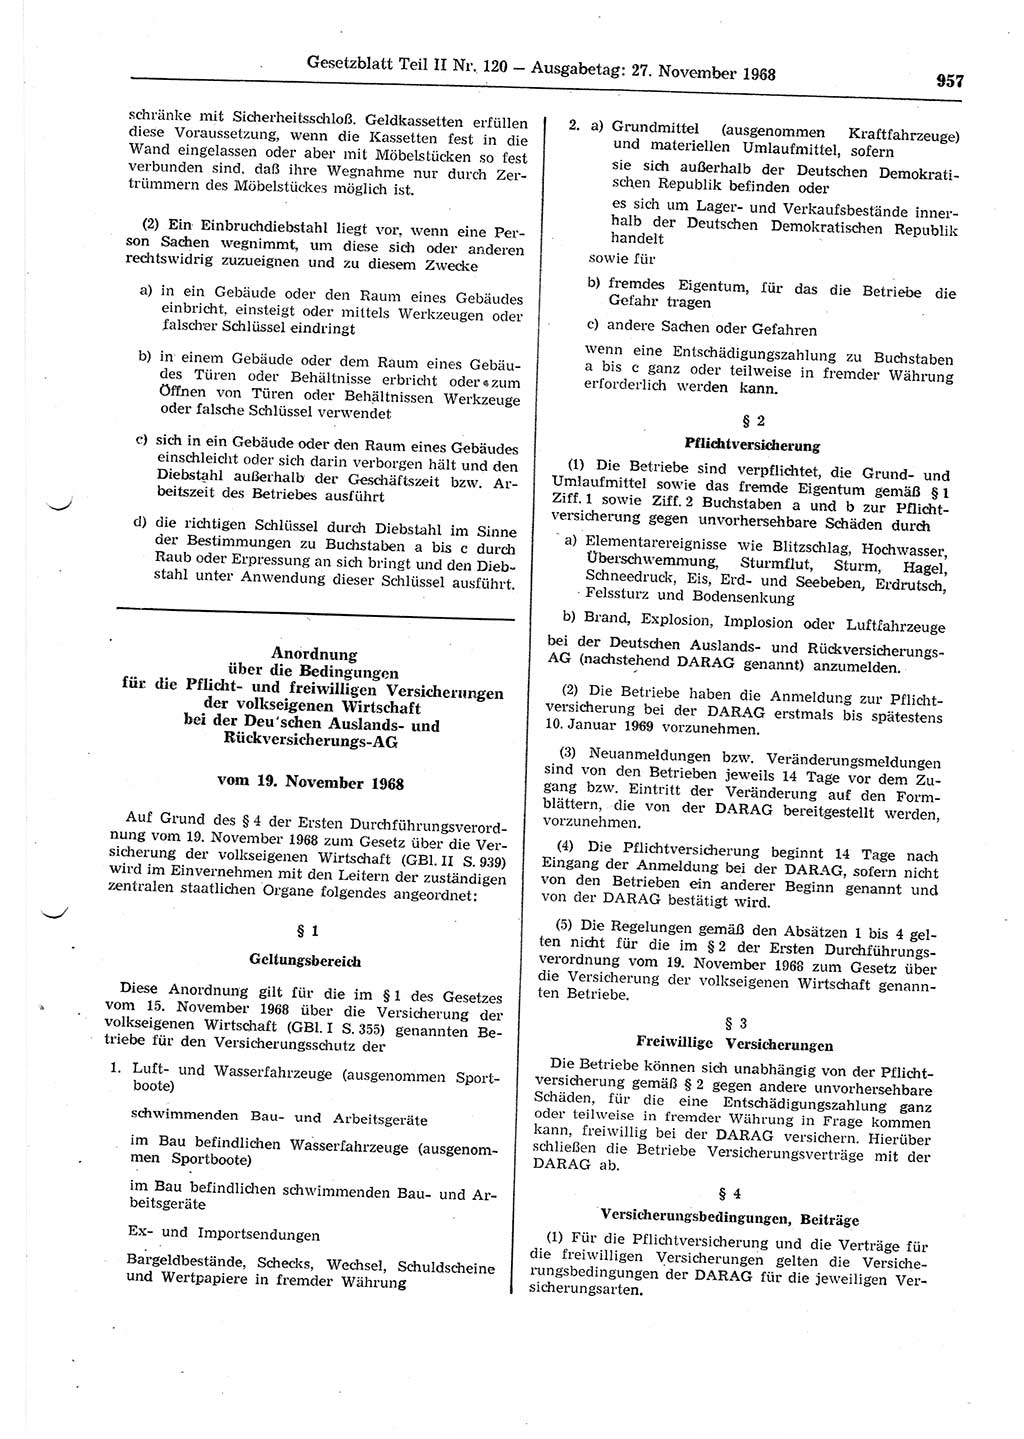 Gesetzblatt (GBl.) der Deutschen Demokratischen Republik (DDR) Teil ⅠⅠ 1968, Seite 957 (GBl. DDR ⅠⅠ 1968, S. 957)